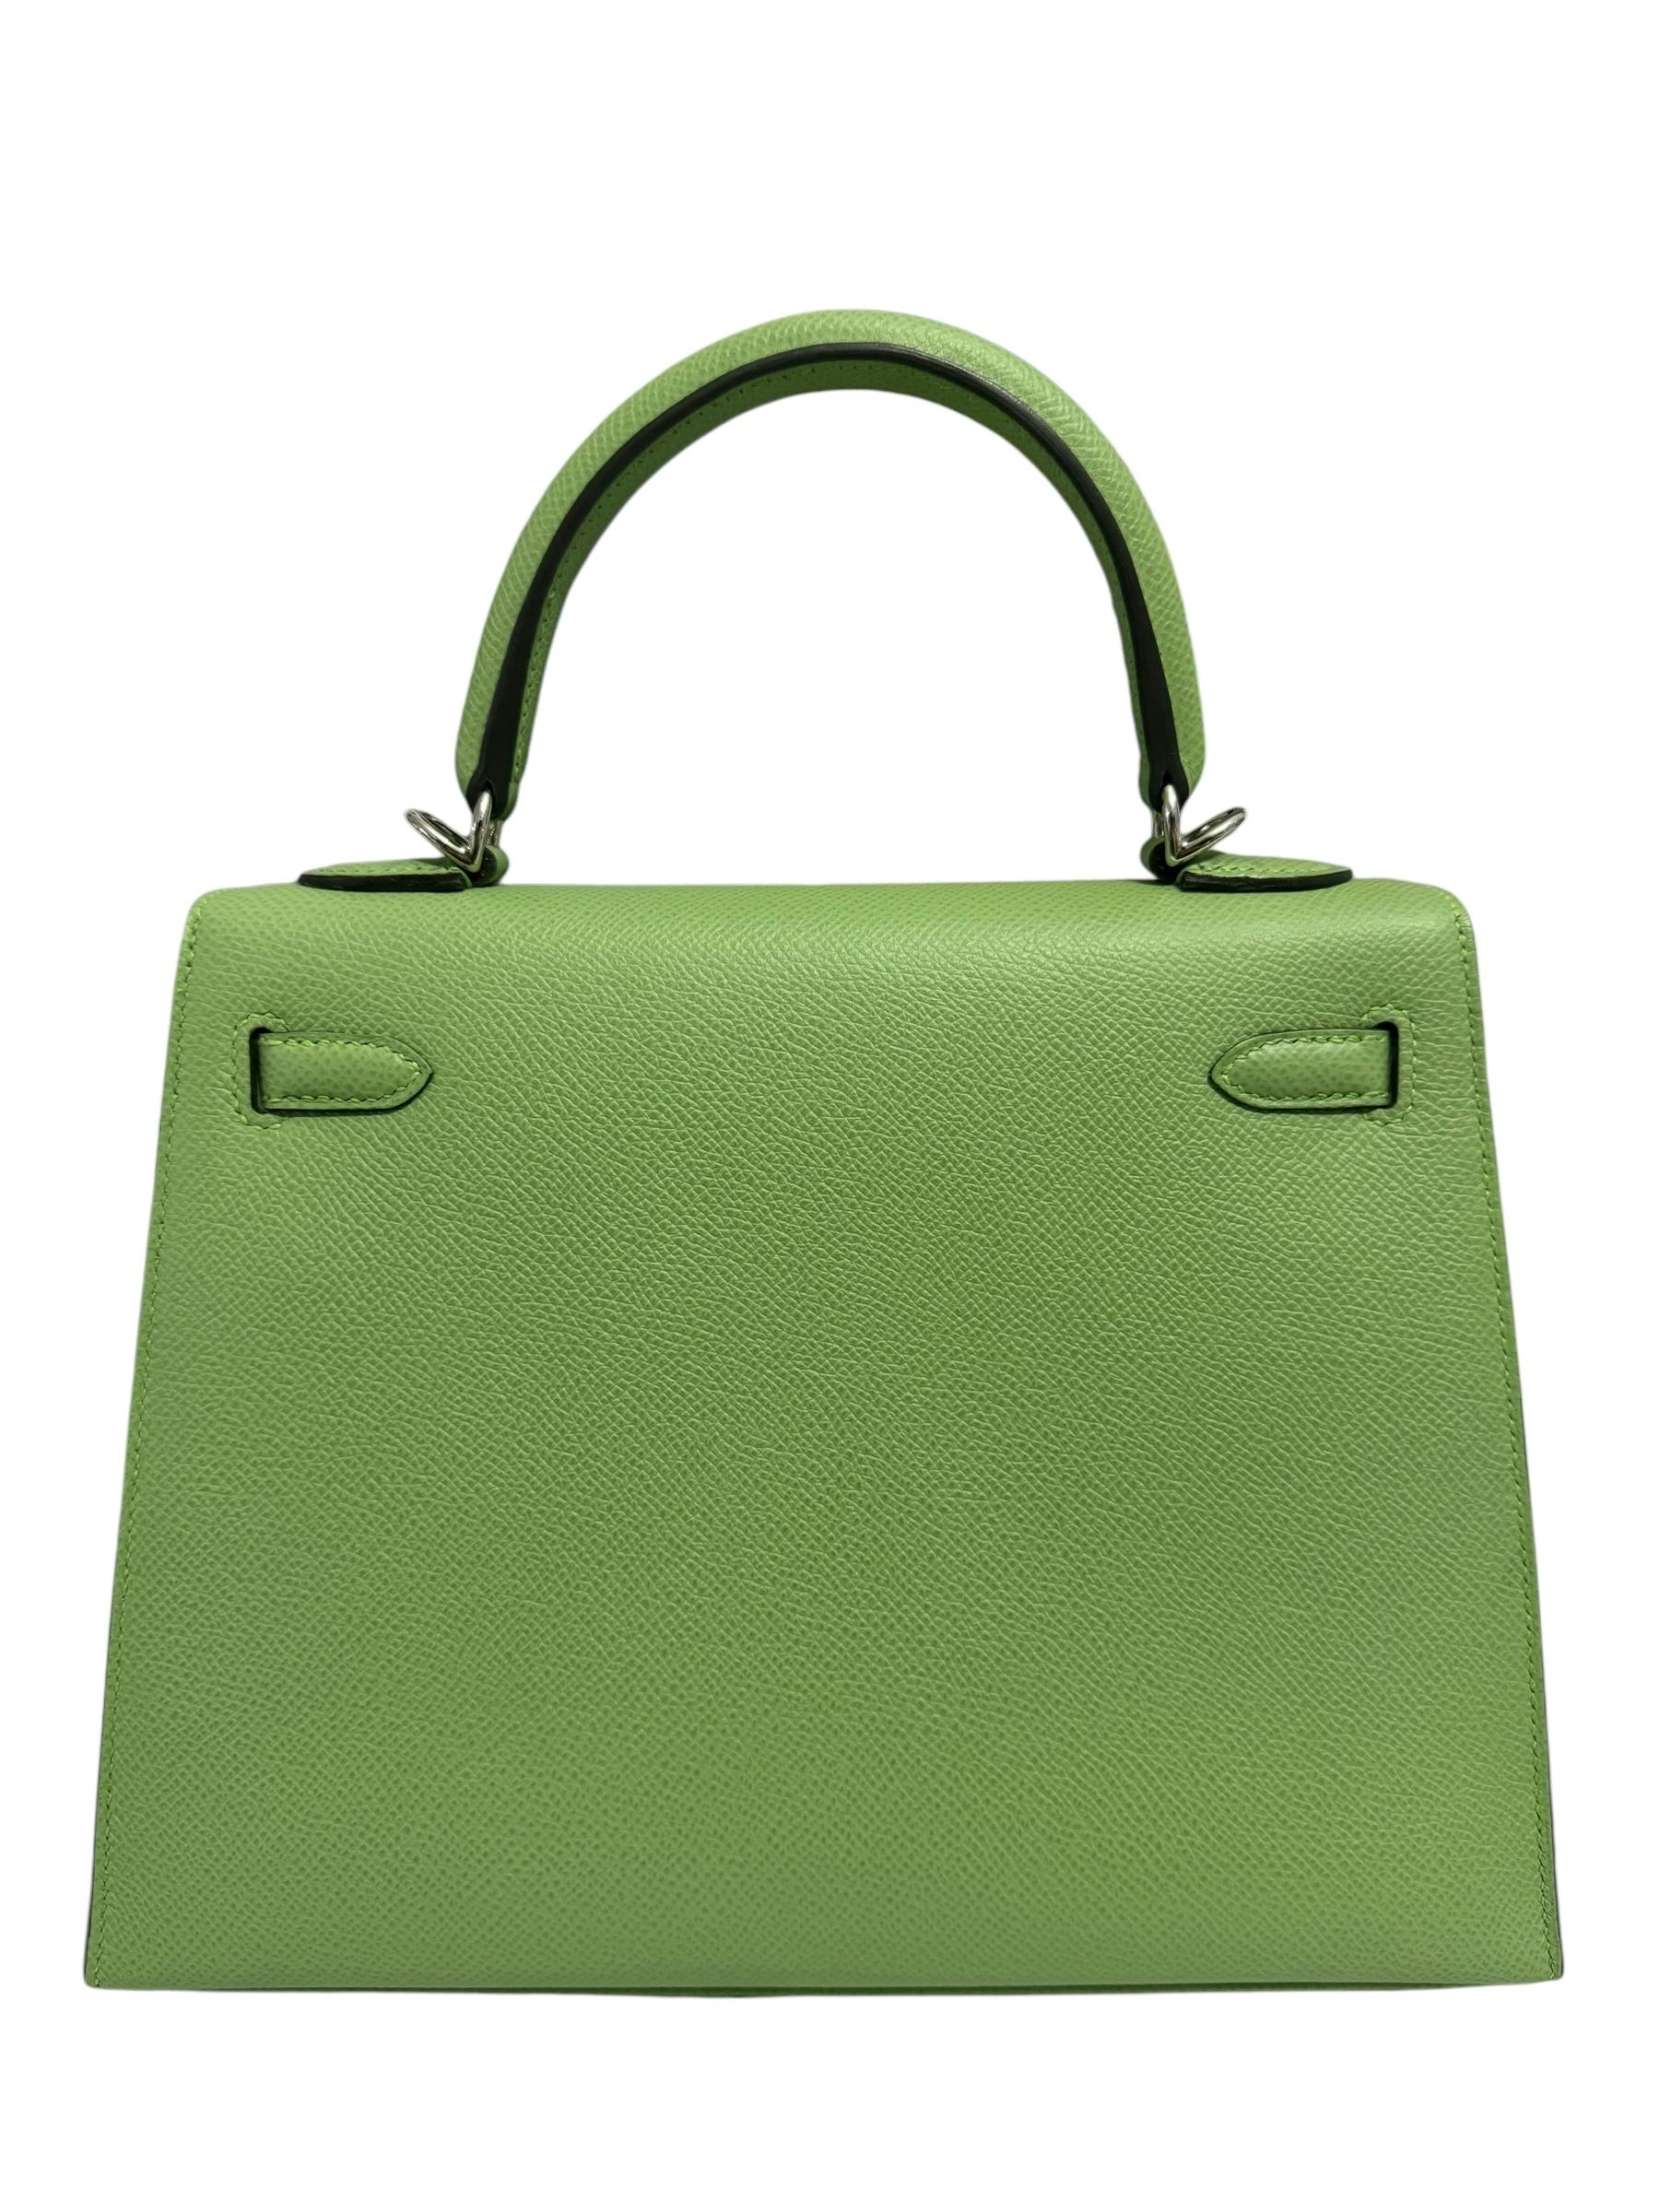 Women's or Men's Hermes Kelly 25 Sellier Vert Criquet Green Epsom Leather Palladium Hardware RARE For Sale